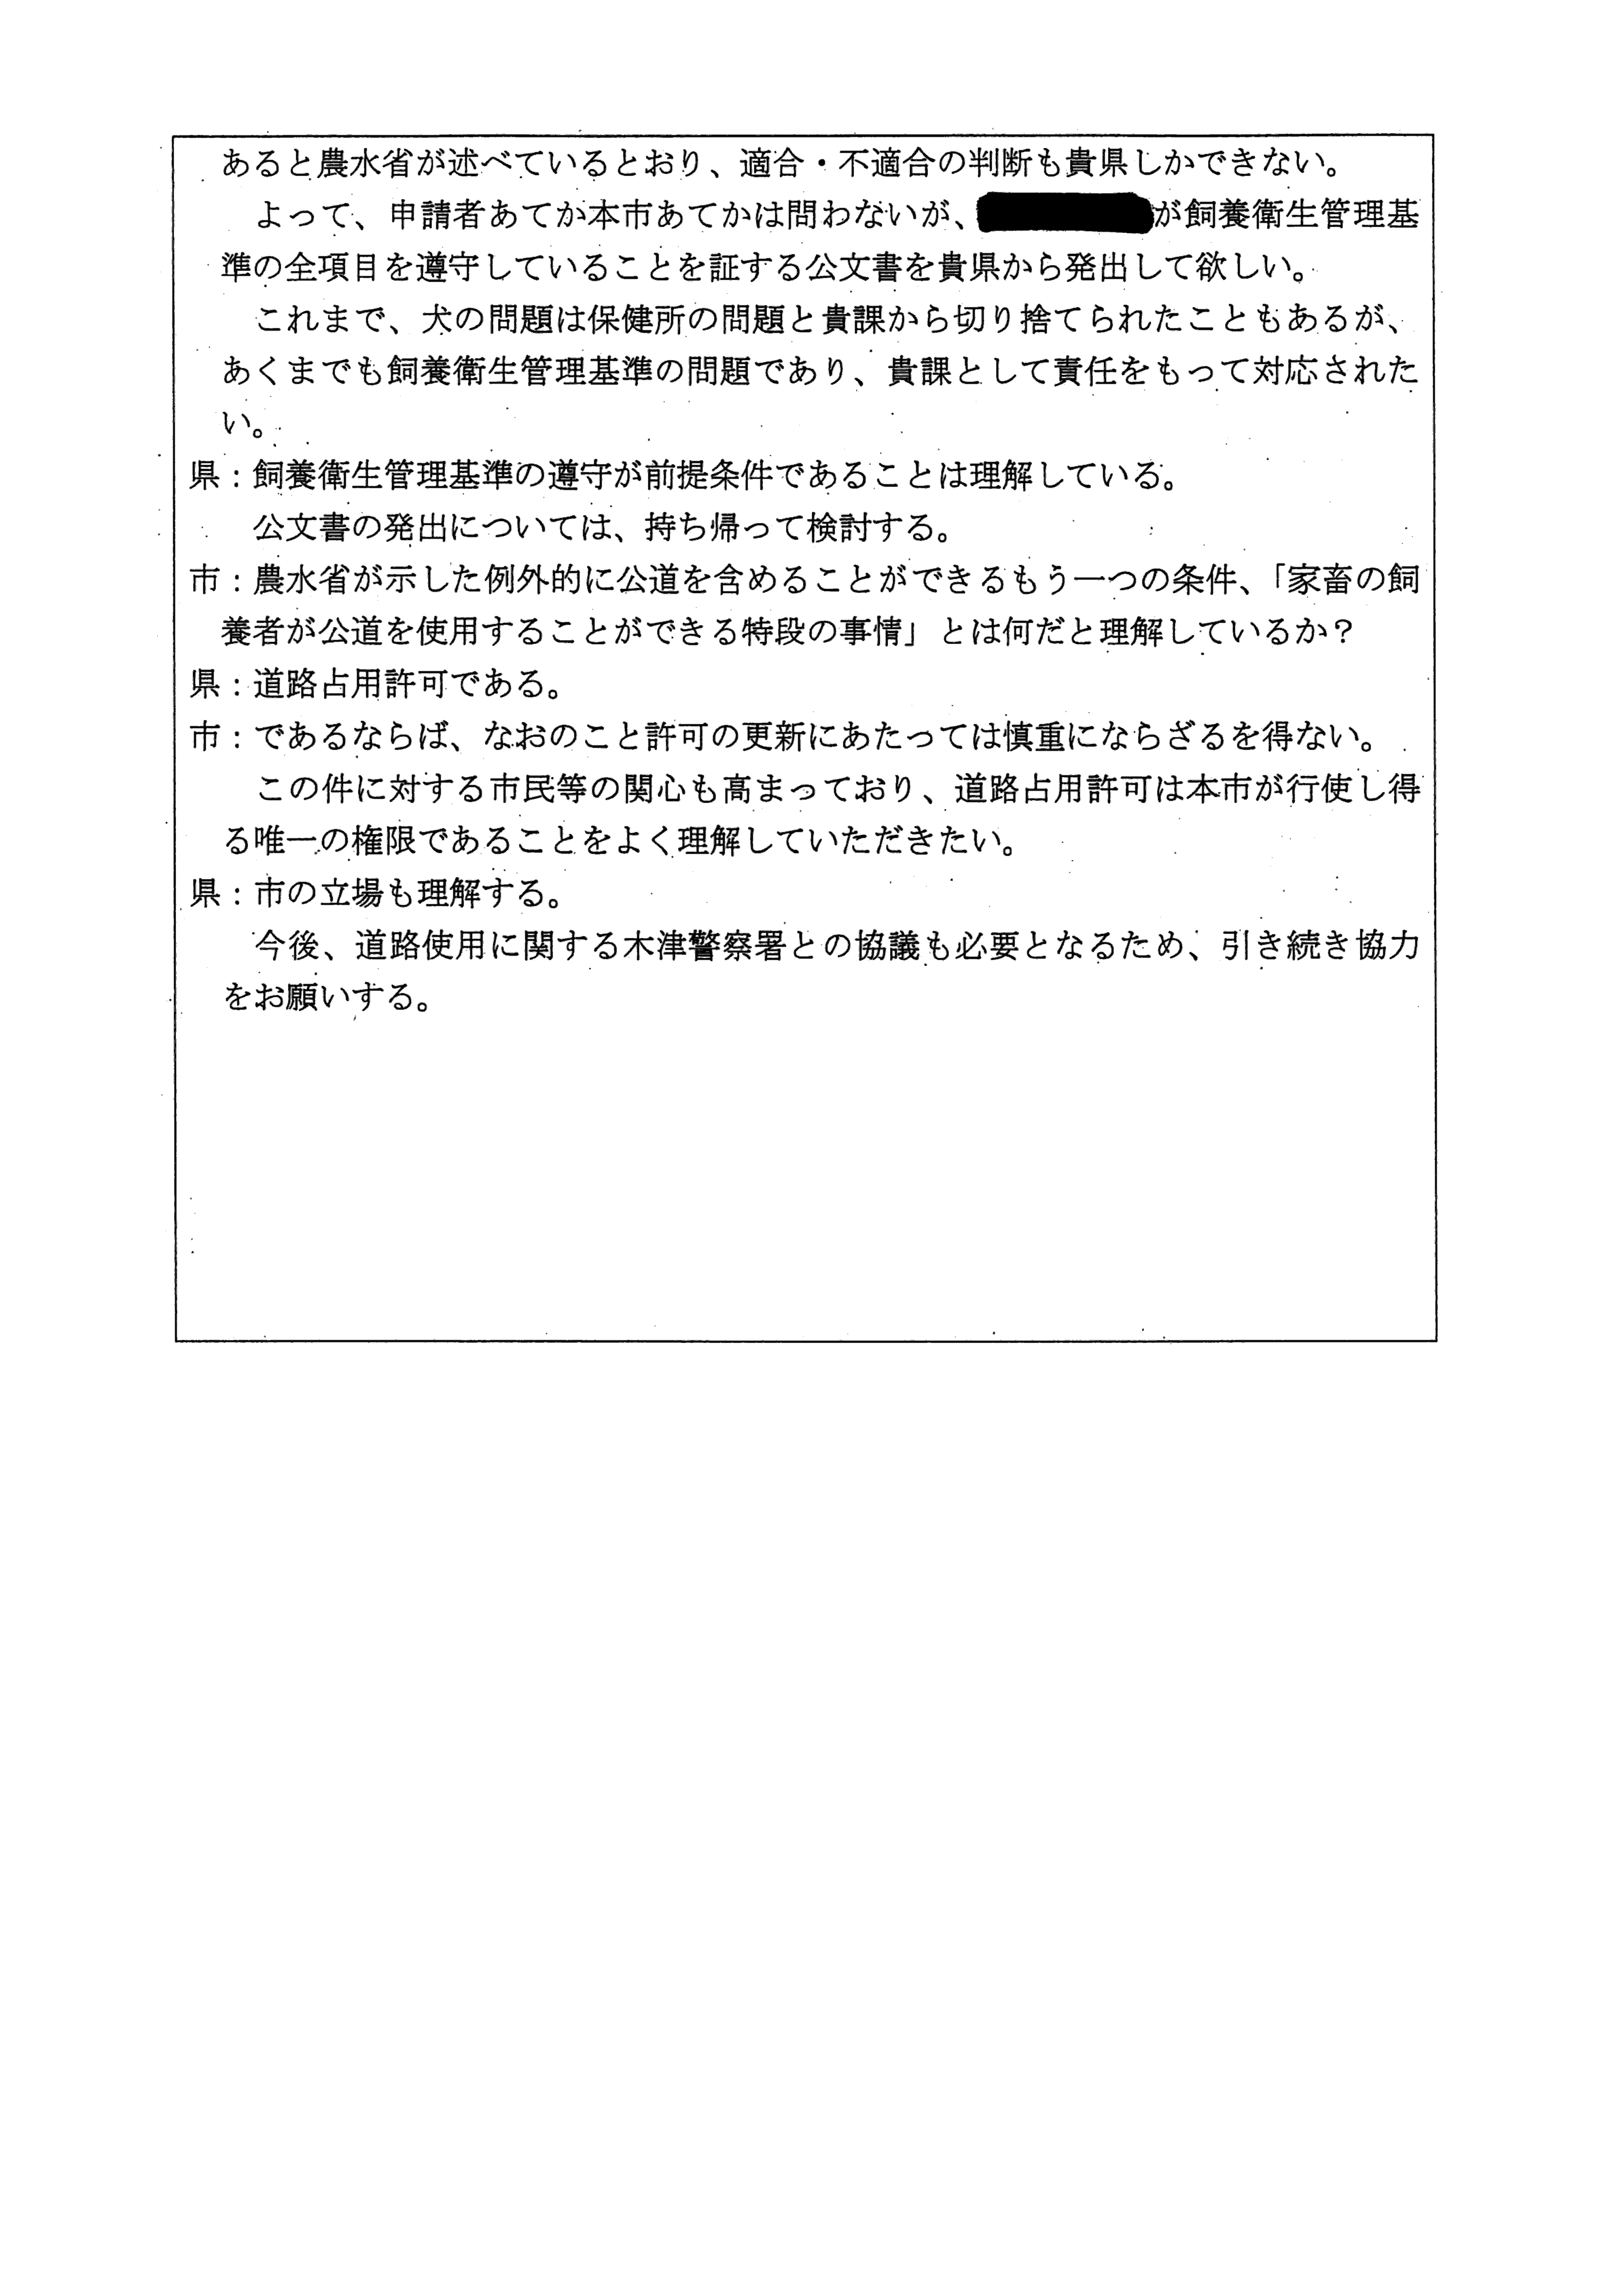 令和4年2月25日-村田商店に対する市道（加2092号）占用許可について（奈良県との協議）-04